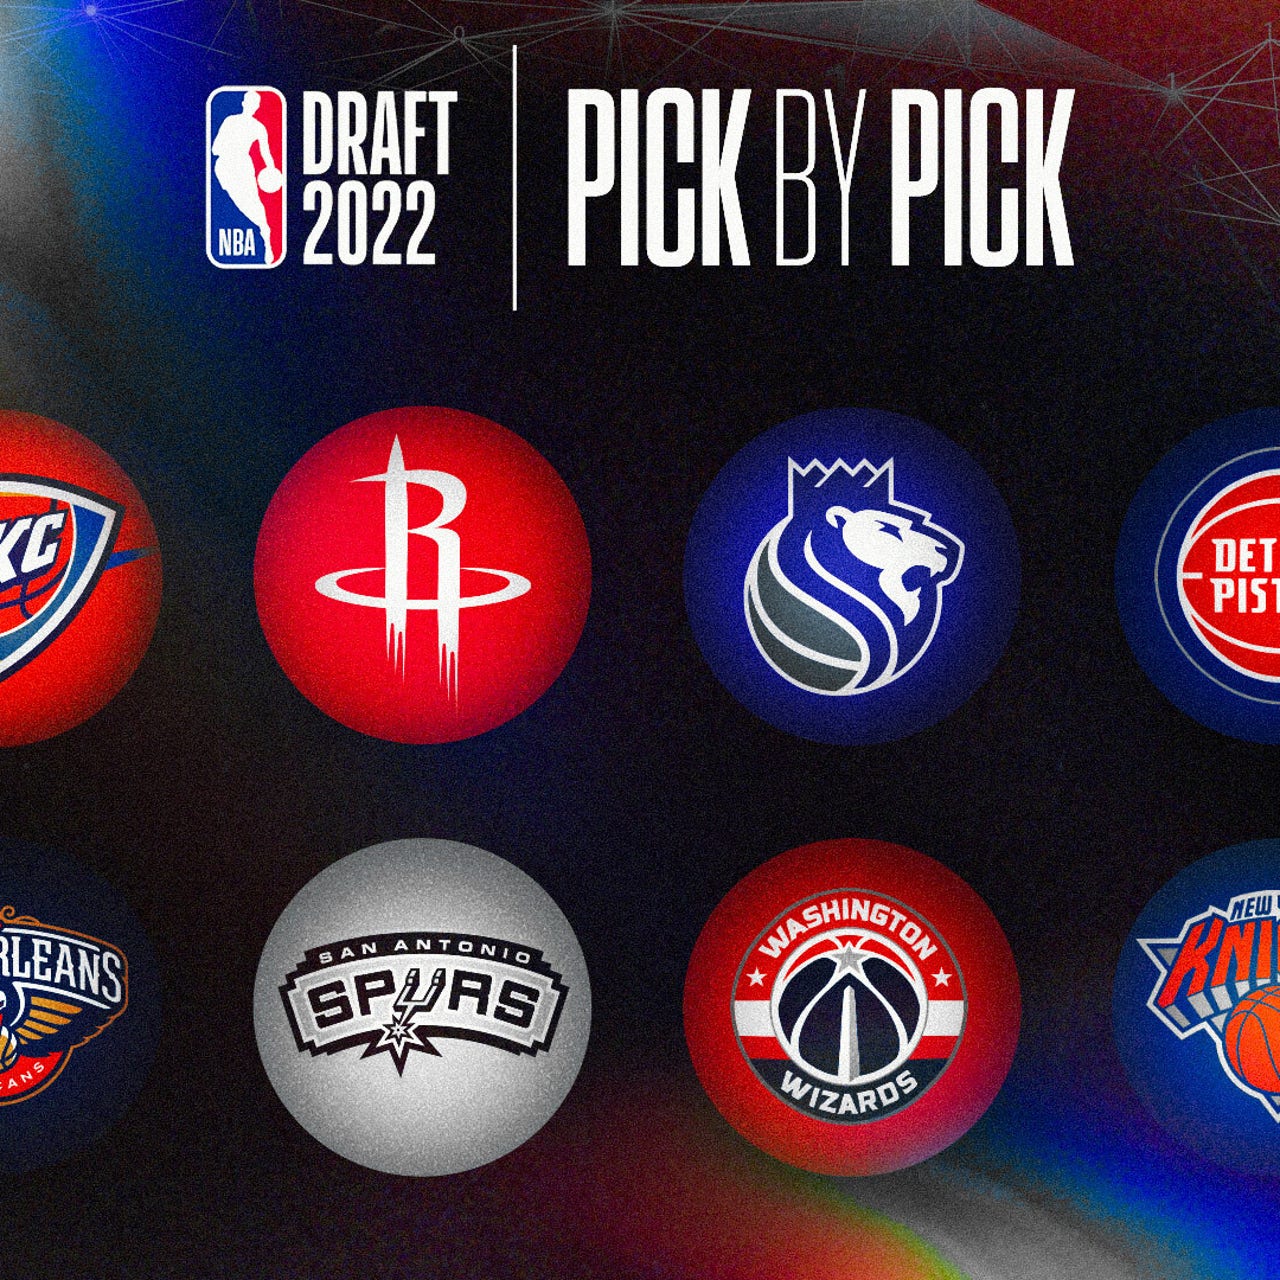 CHGO Bulls 2022 NBA Draft Profiles: Walker Kessler - CHGO